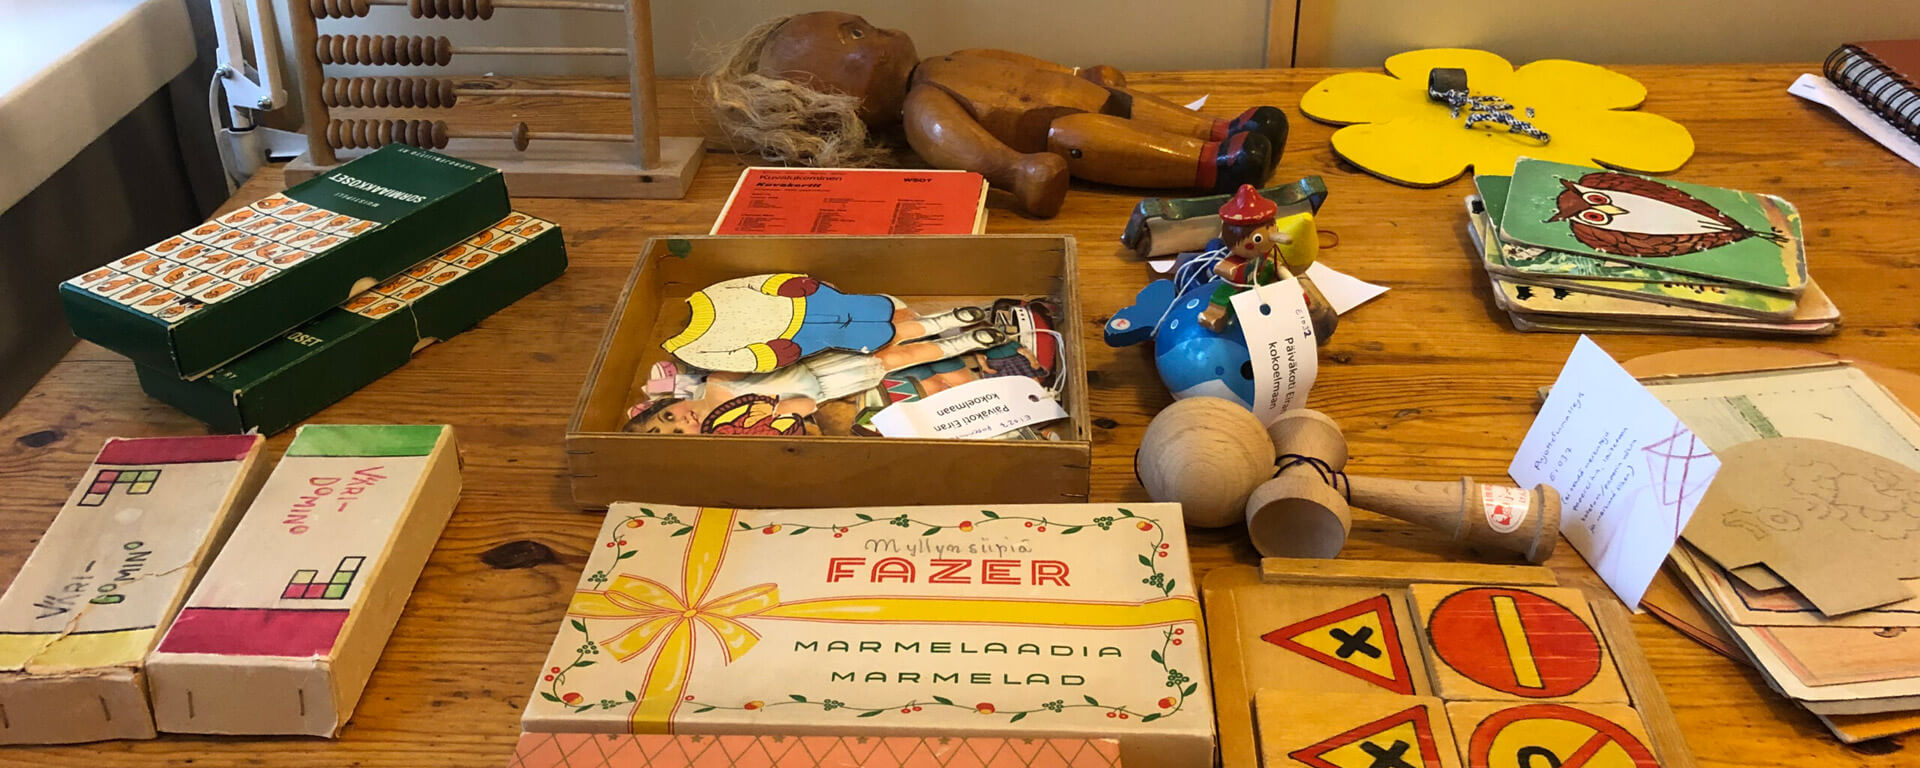 Päiväkoti Eirasta Lastentarhamuseoon lahjoitettuja esineitä pöytäpinnalla odottamassa käsittelyä. Kuva: Matleena Gaetz